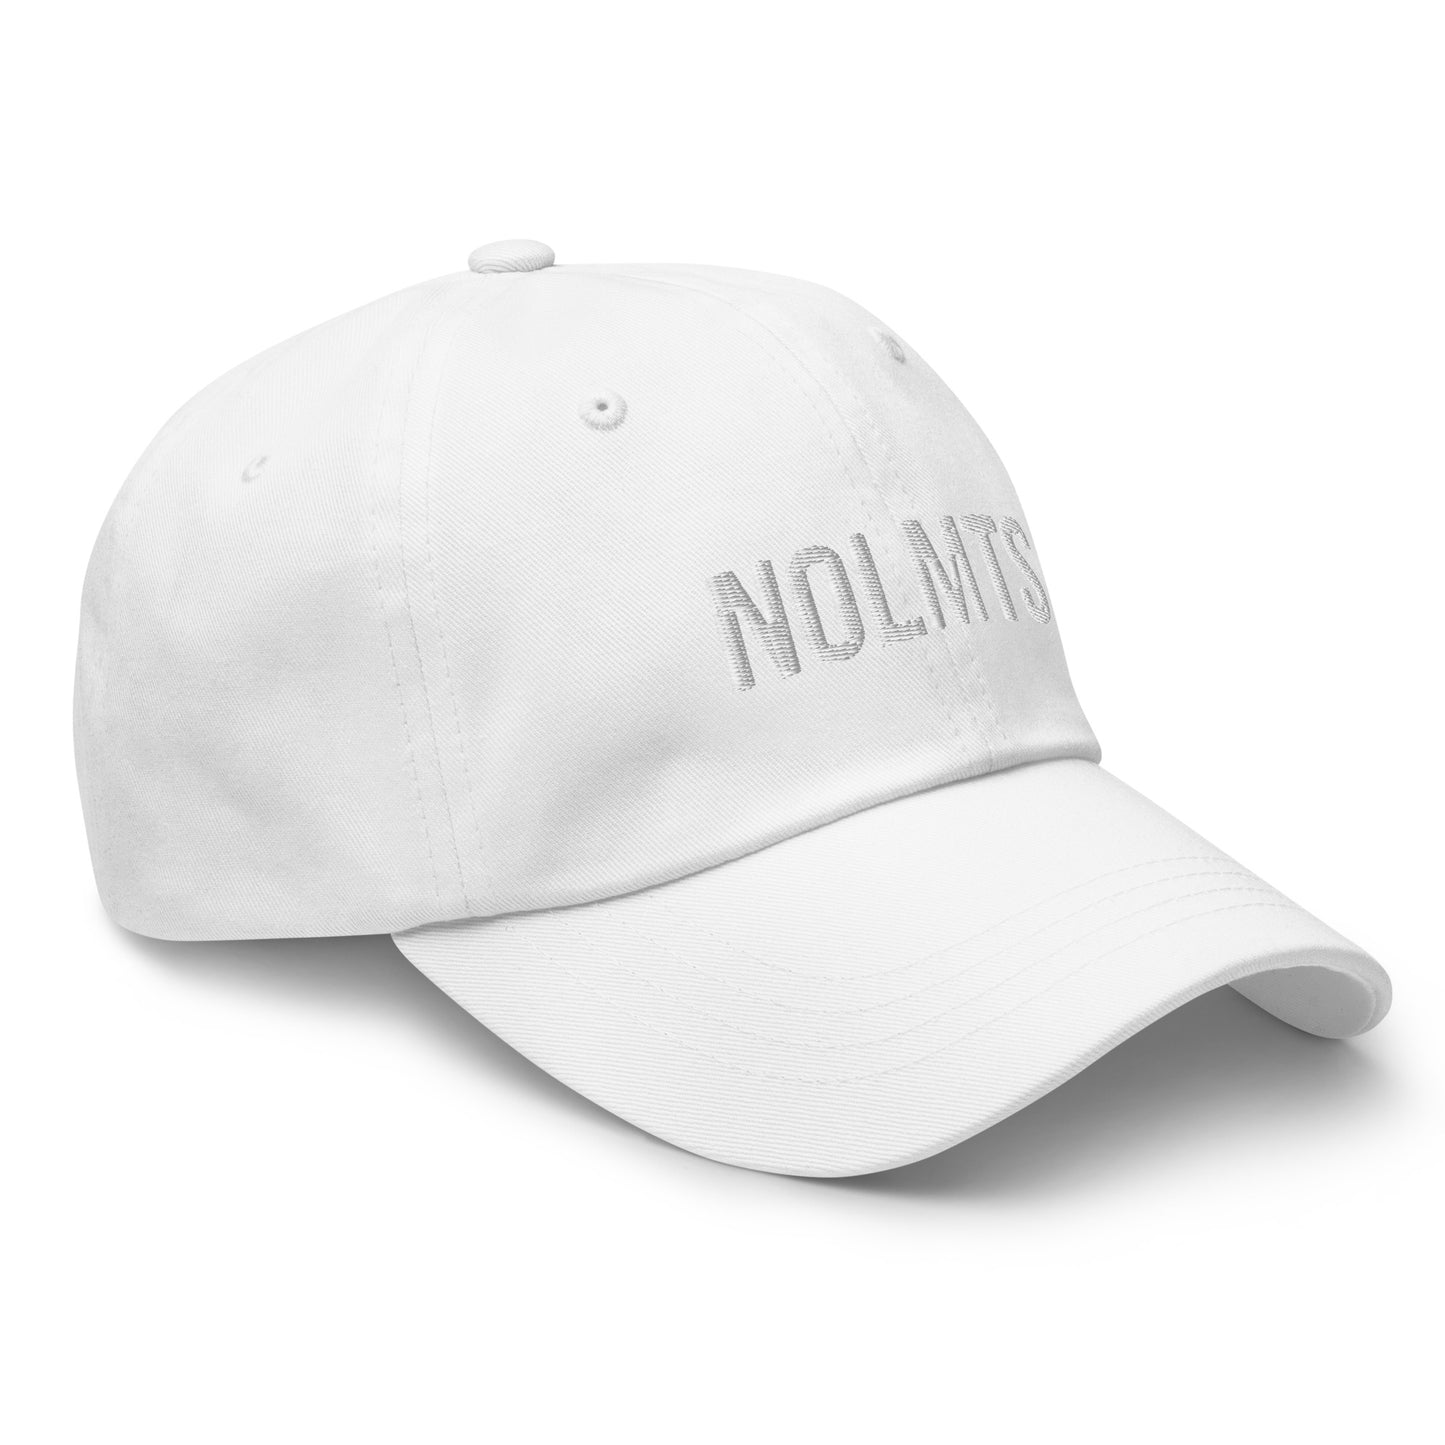 NOLMTS™ Dad Hat